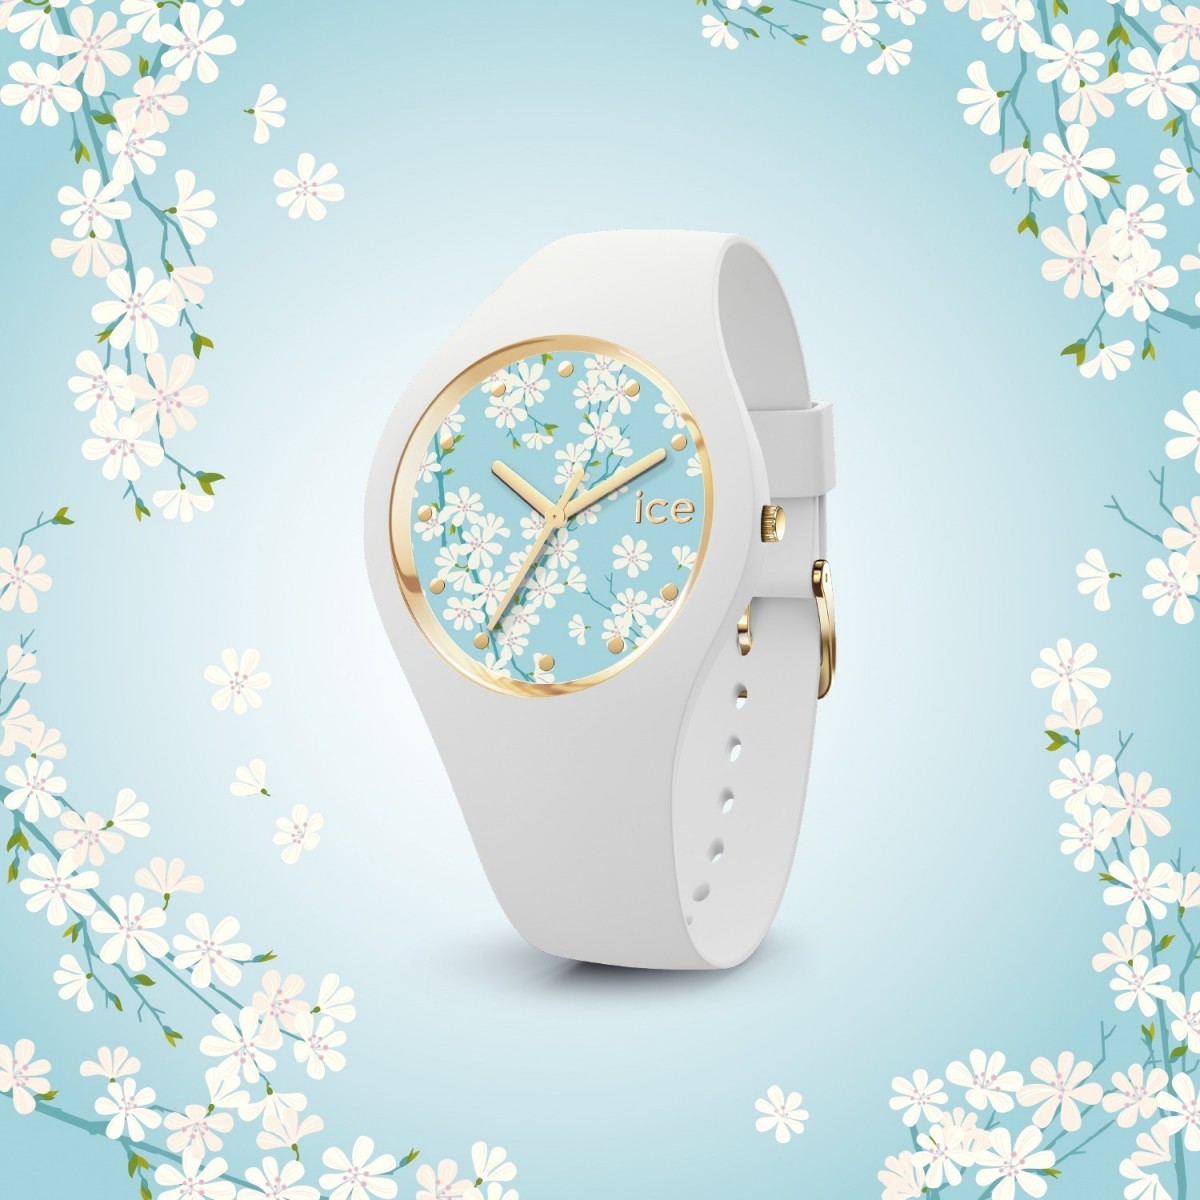 アイスウォッチ“花々が咲く”新作腕時計、デイジーやサクラをモチーフに